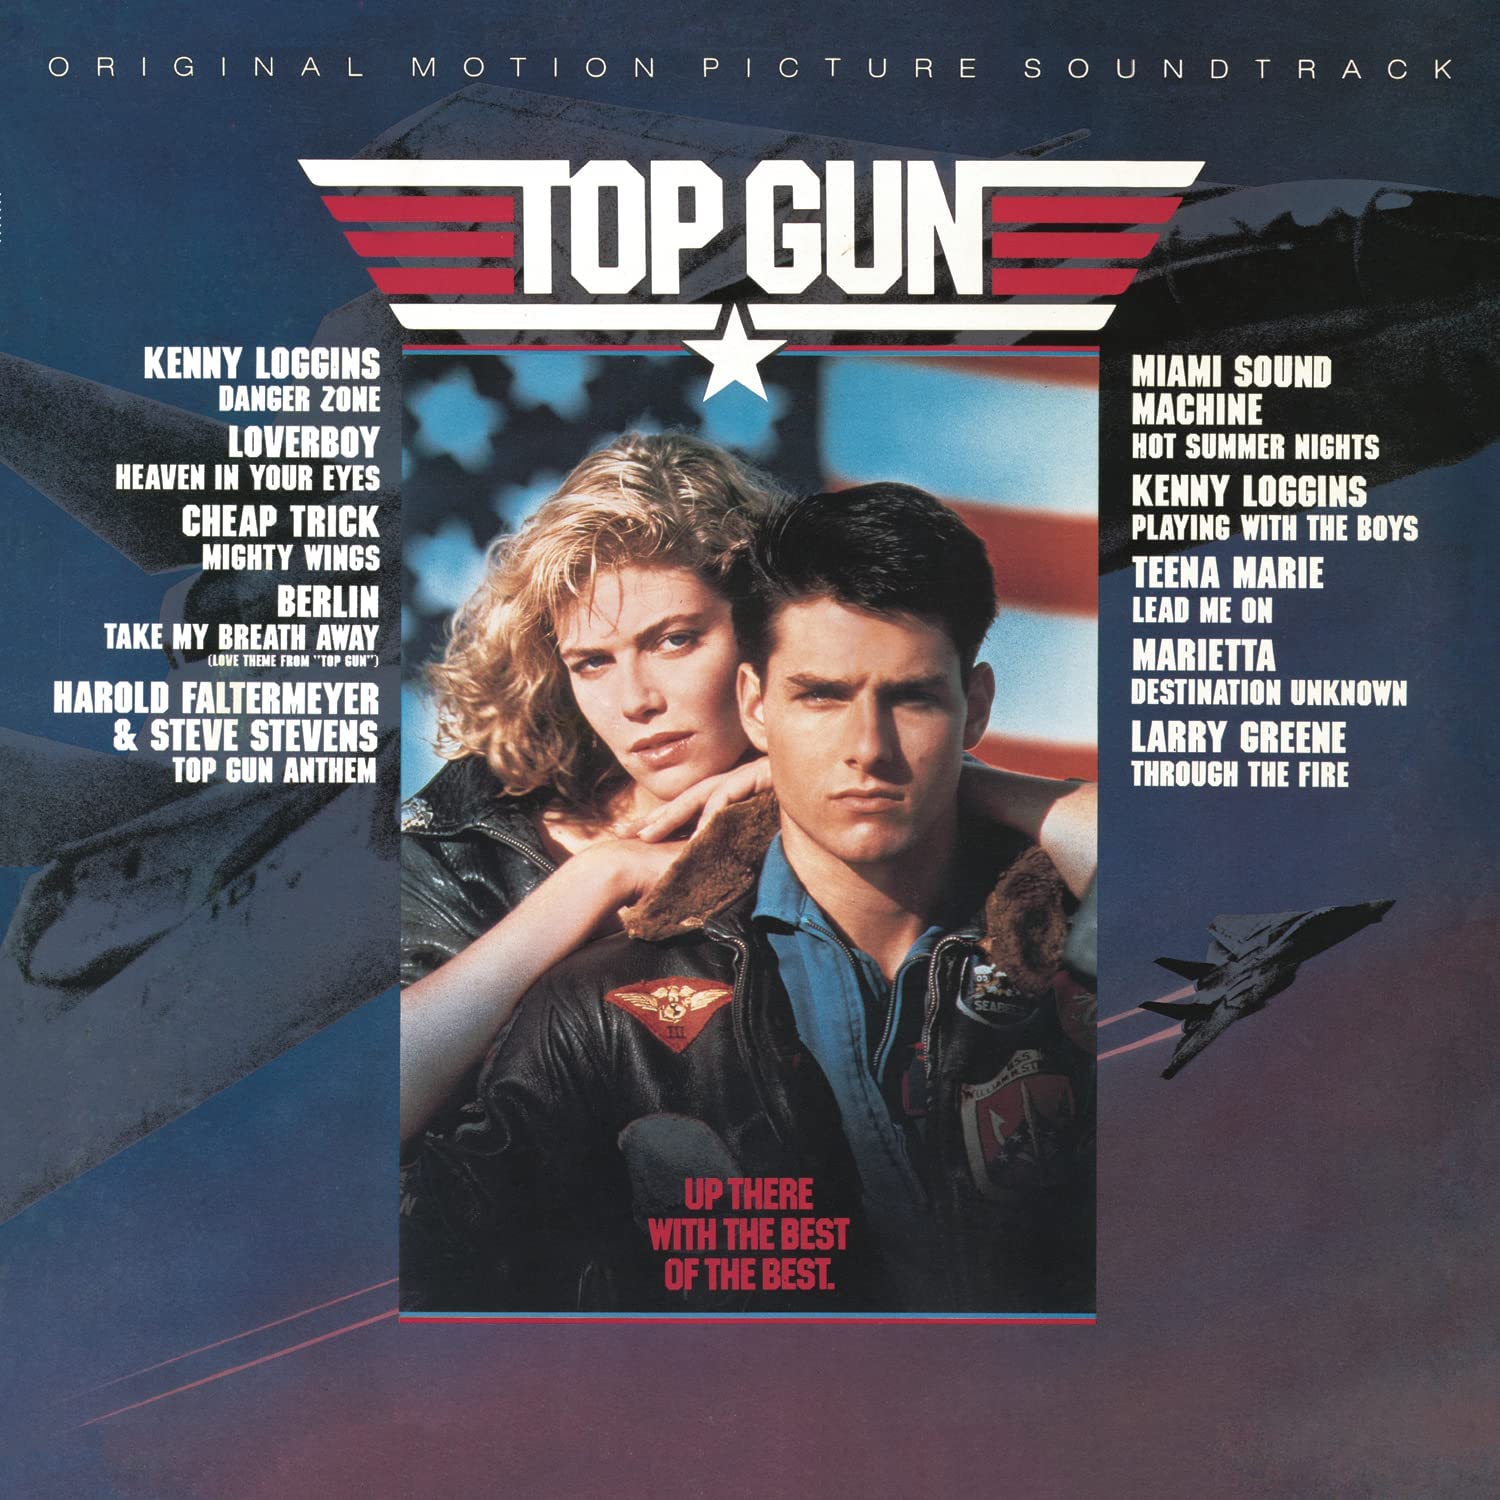 Take My Breath Away - Testo e Traduzione Canzone Top Gun 1986